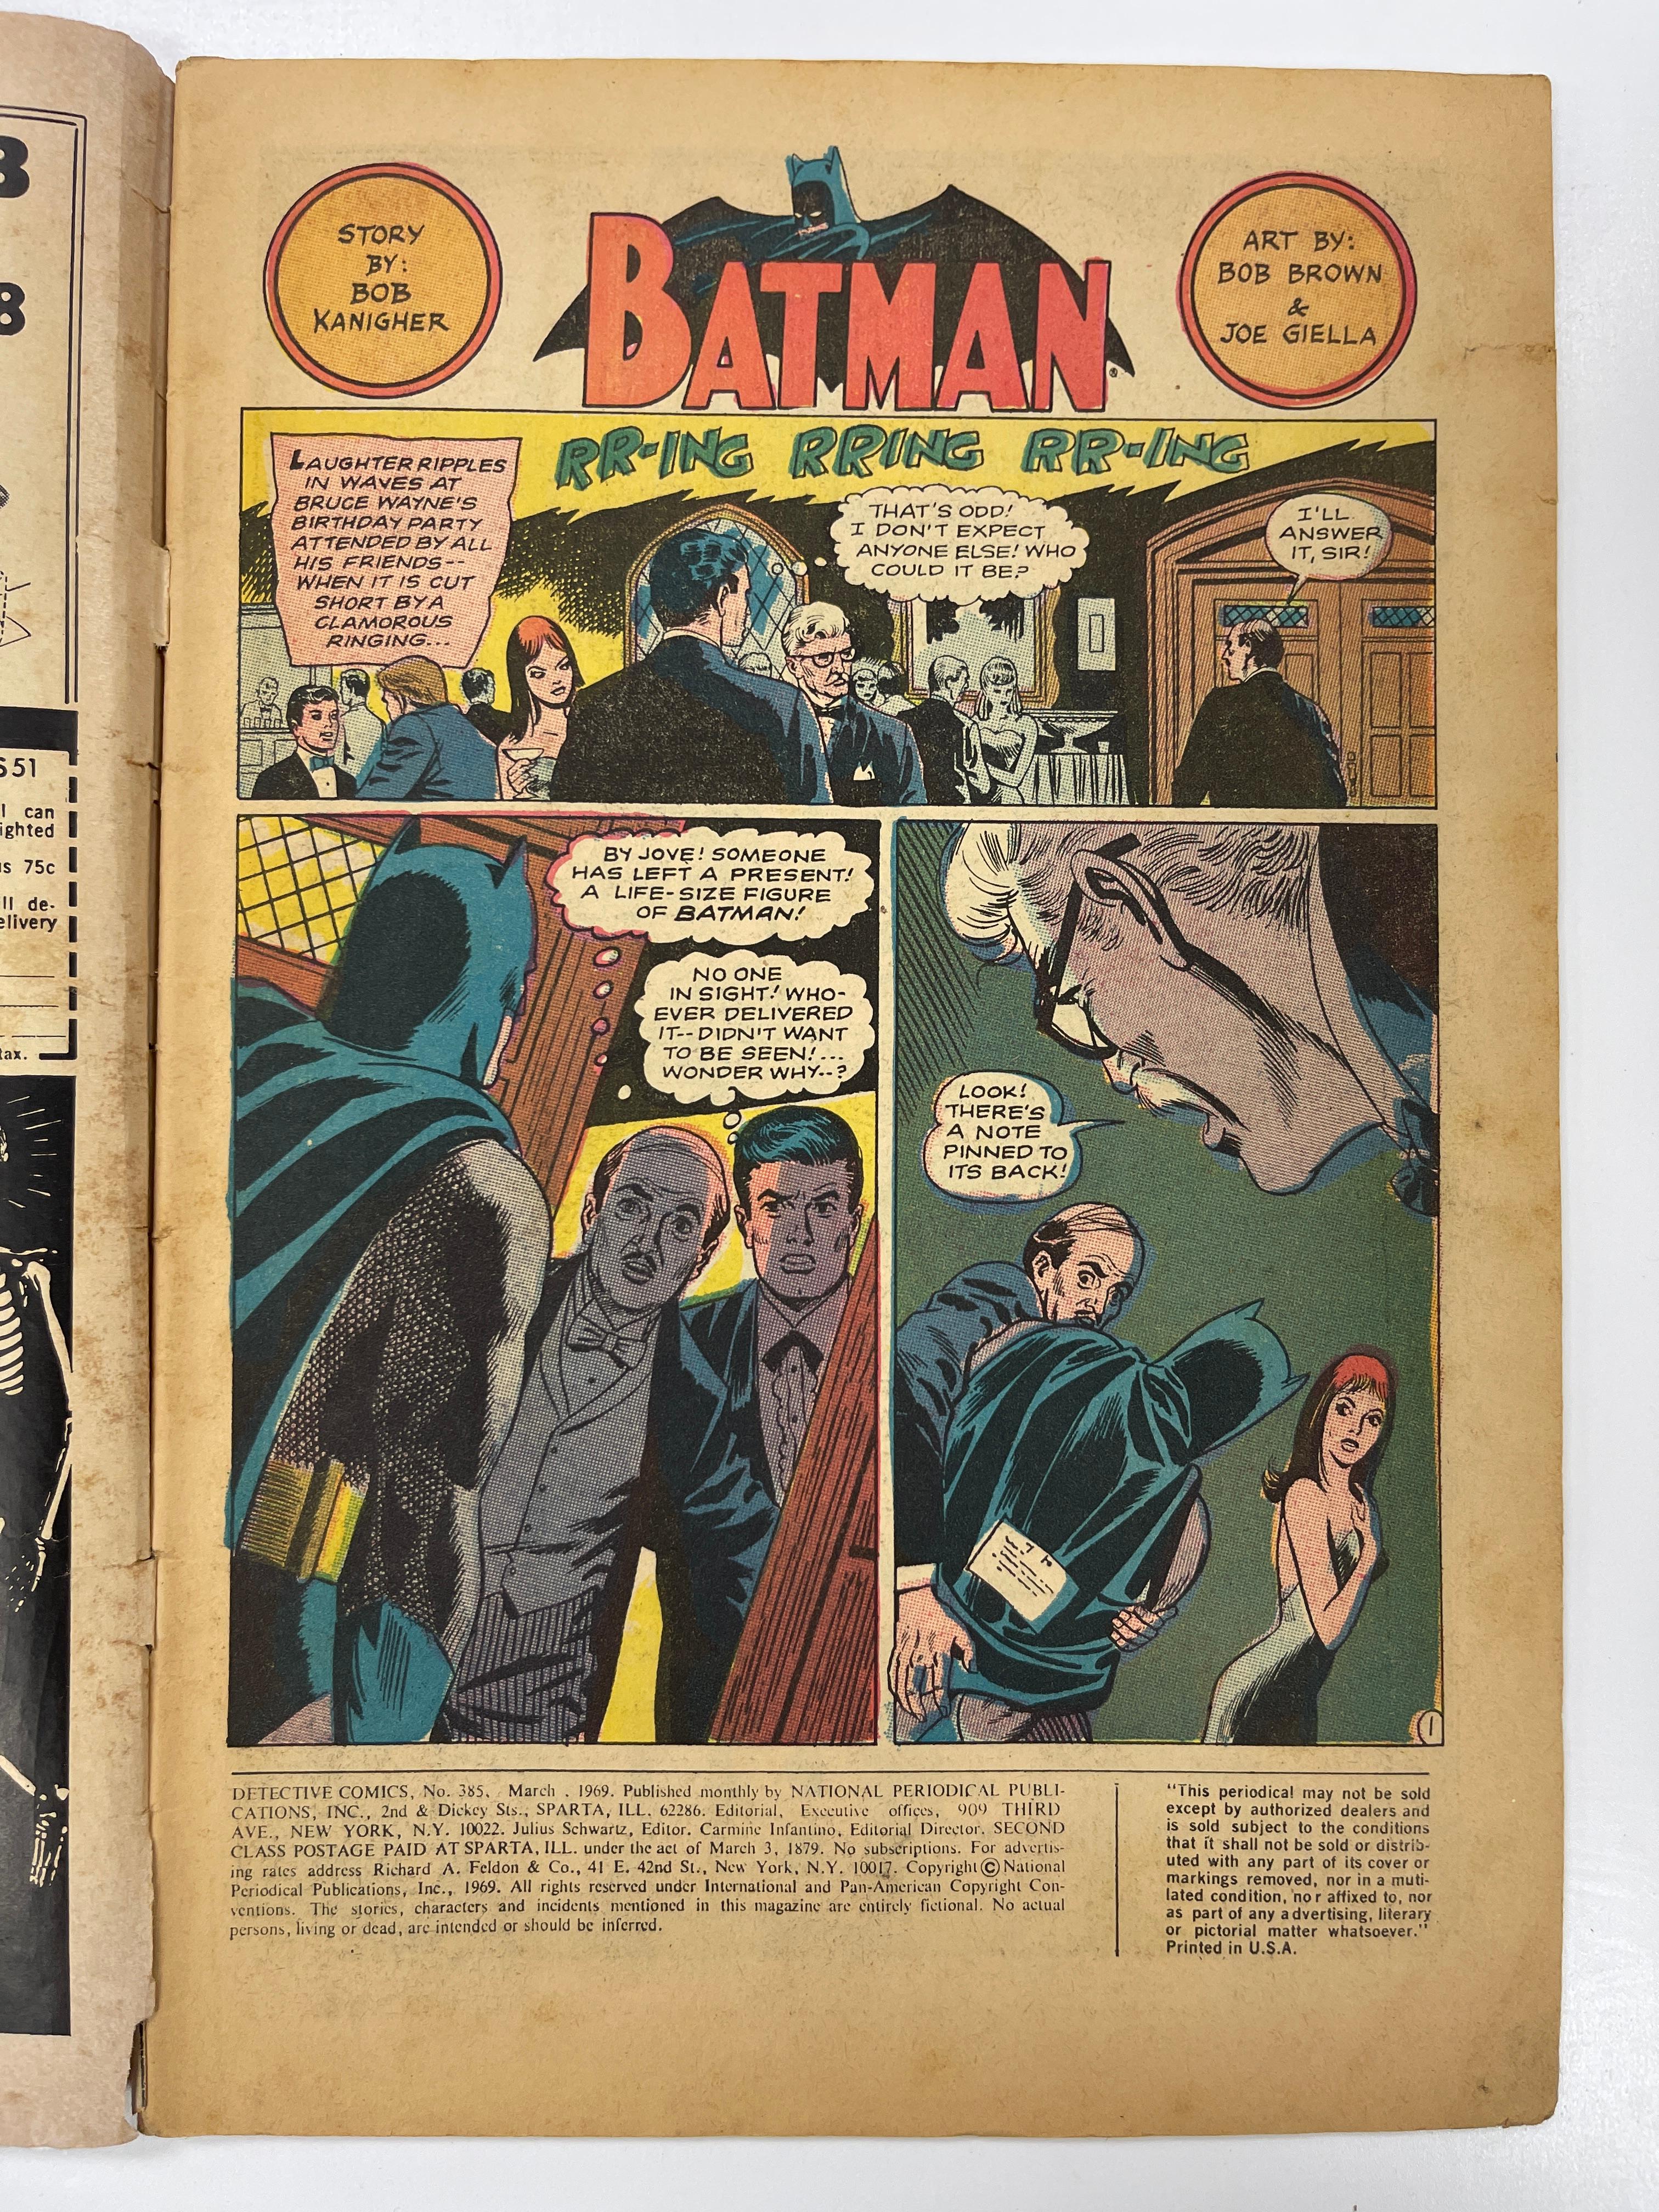 Detective Comics #385 Batgirl Silver Age Batman Superhero DC Comic 1969